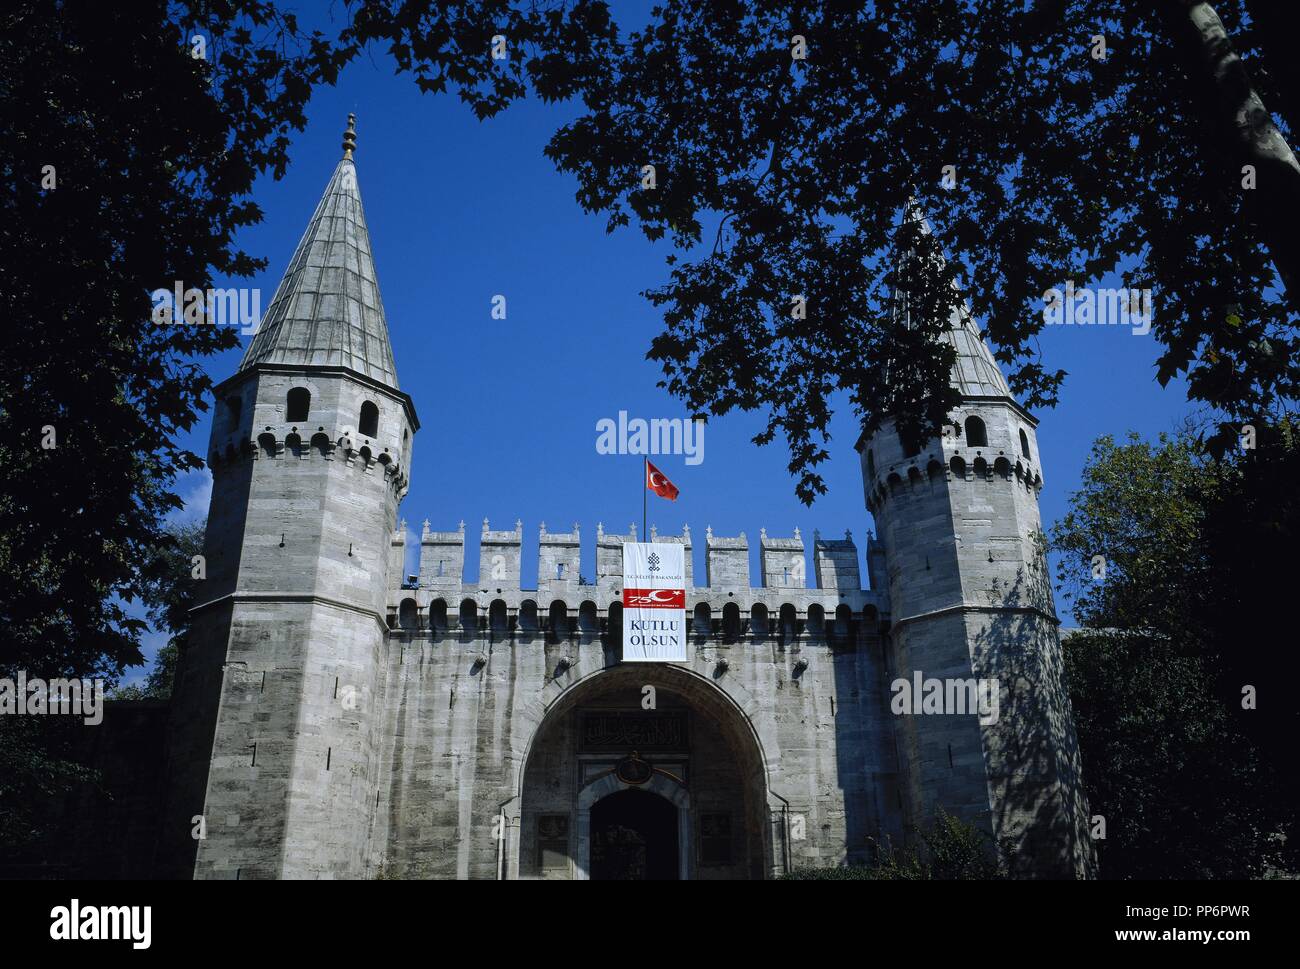 La Turchia. Istanbul. Ortakapi gate (porta centrale). Accesso al Palazzo Topkapi. Costruito nel 1524 da Solimano il Magnifico. Foto Stock